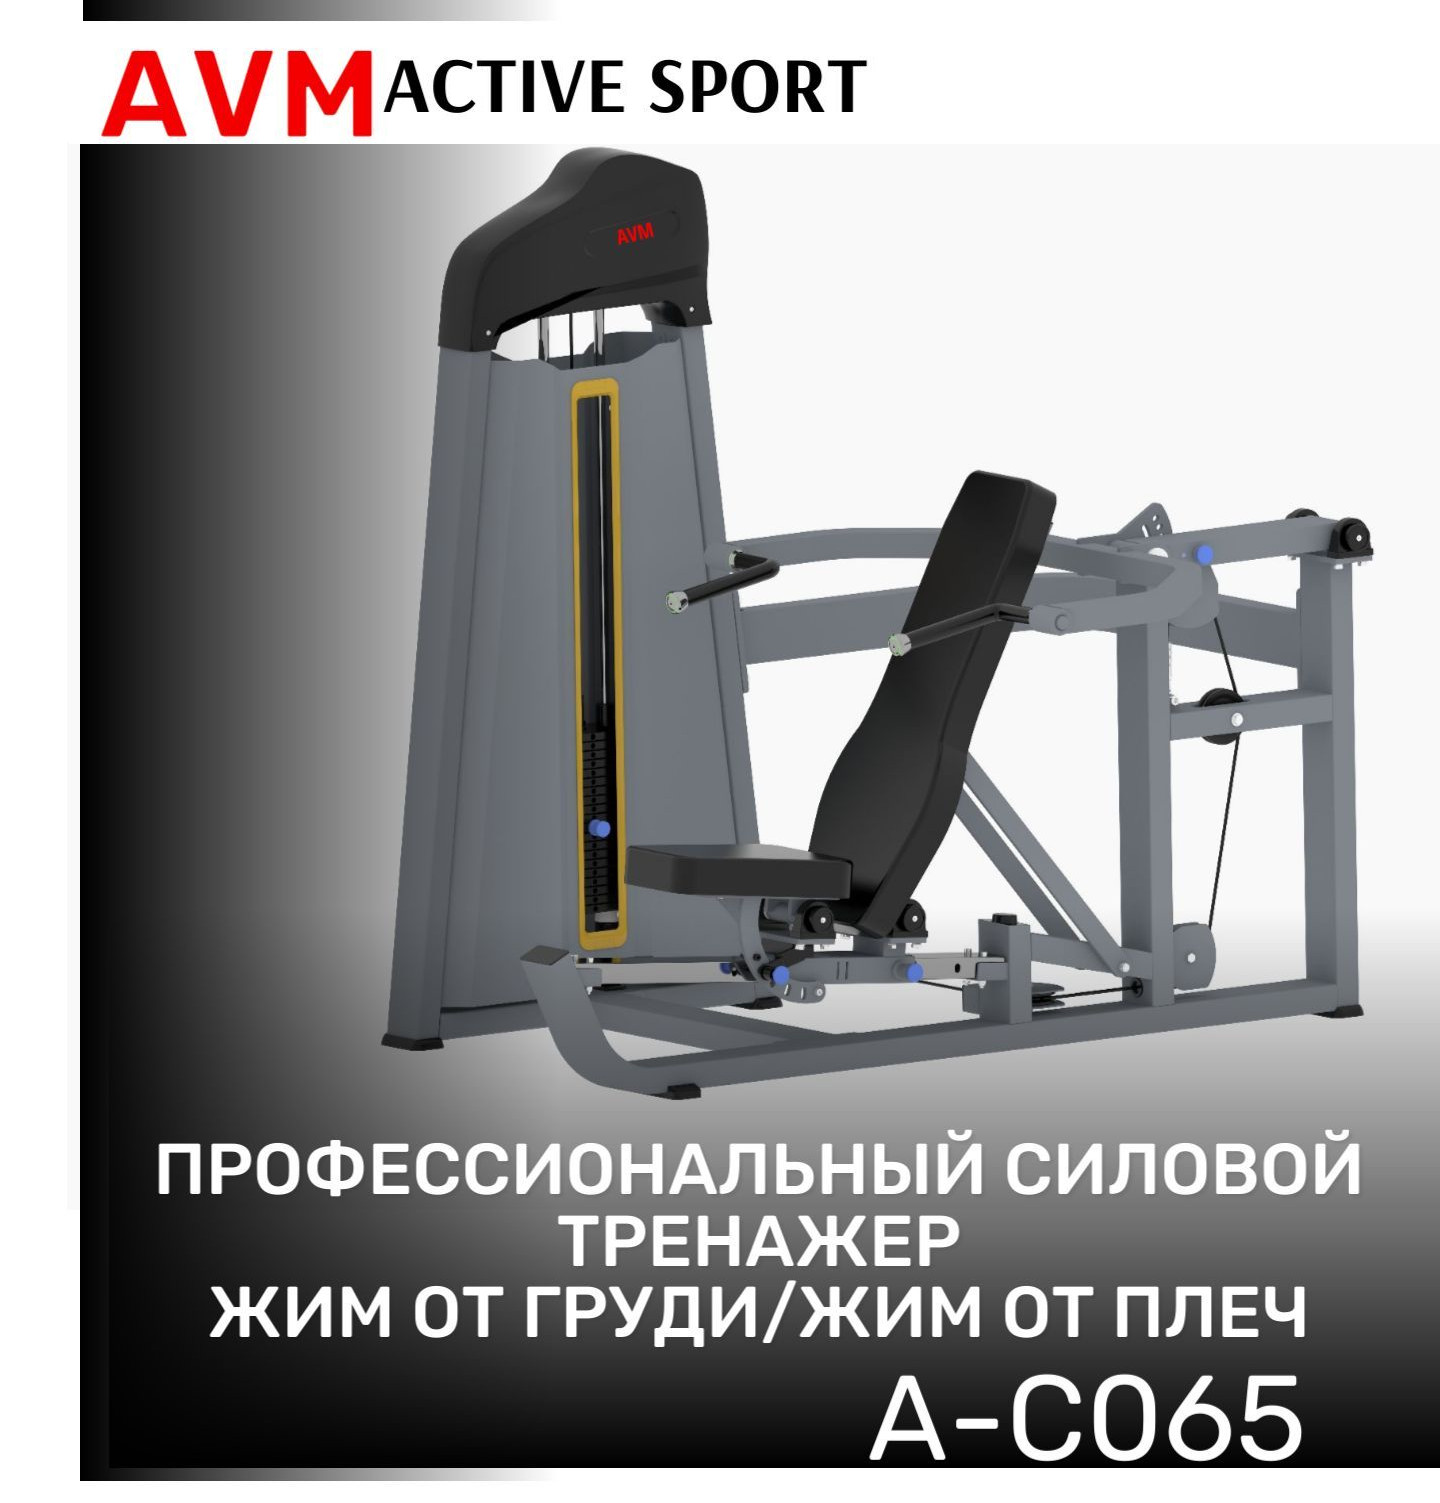 Тренажер для зала AVM A-C065 жим от груди/жим от плеч профессиональный силовой